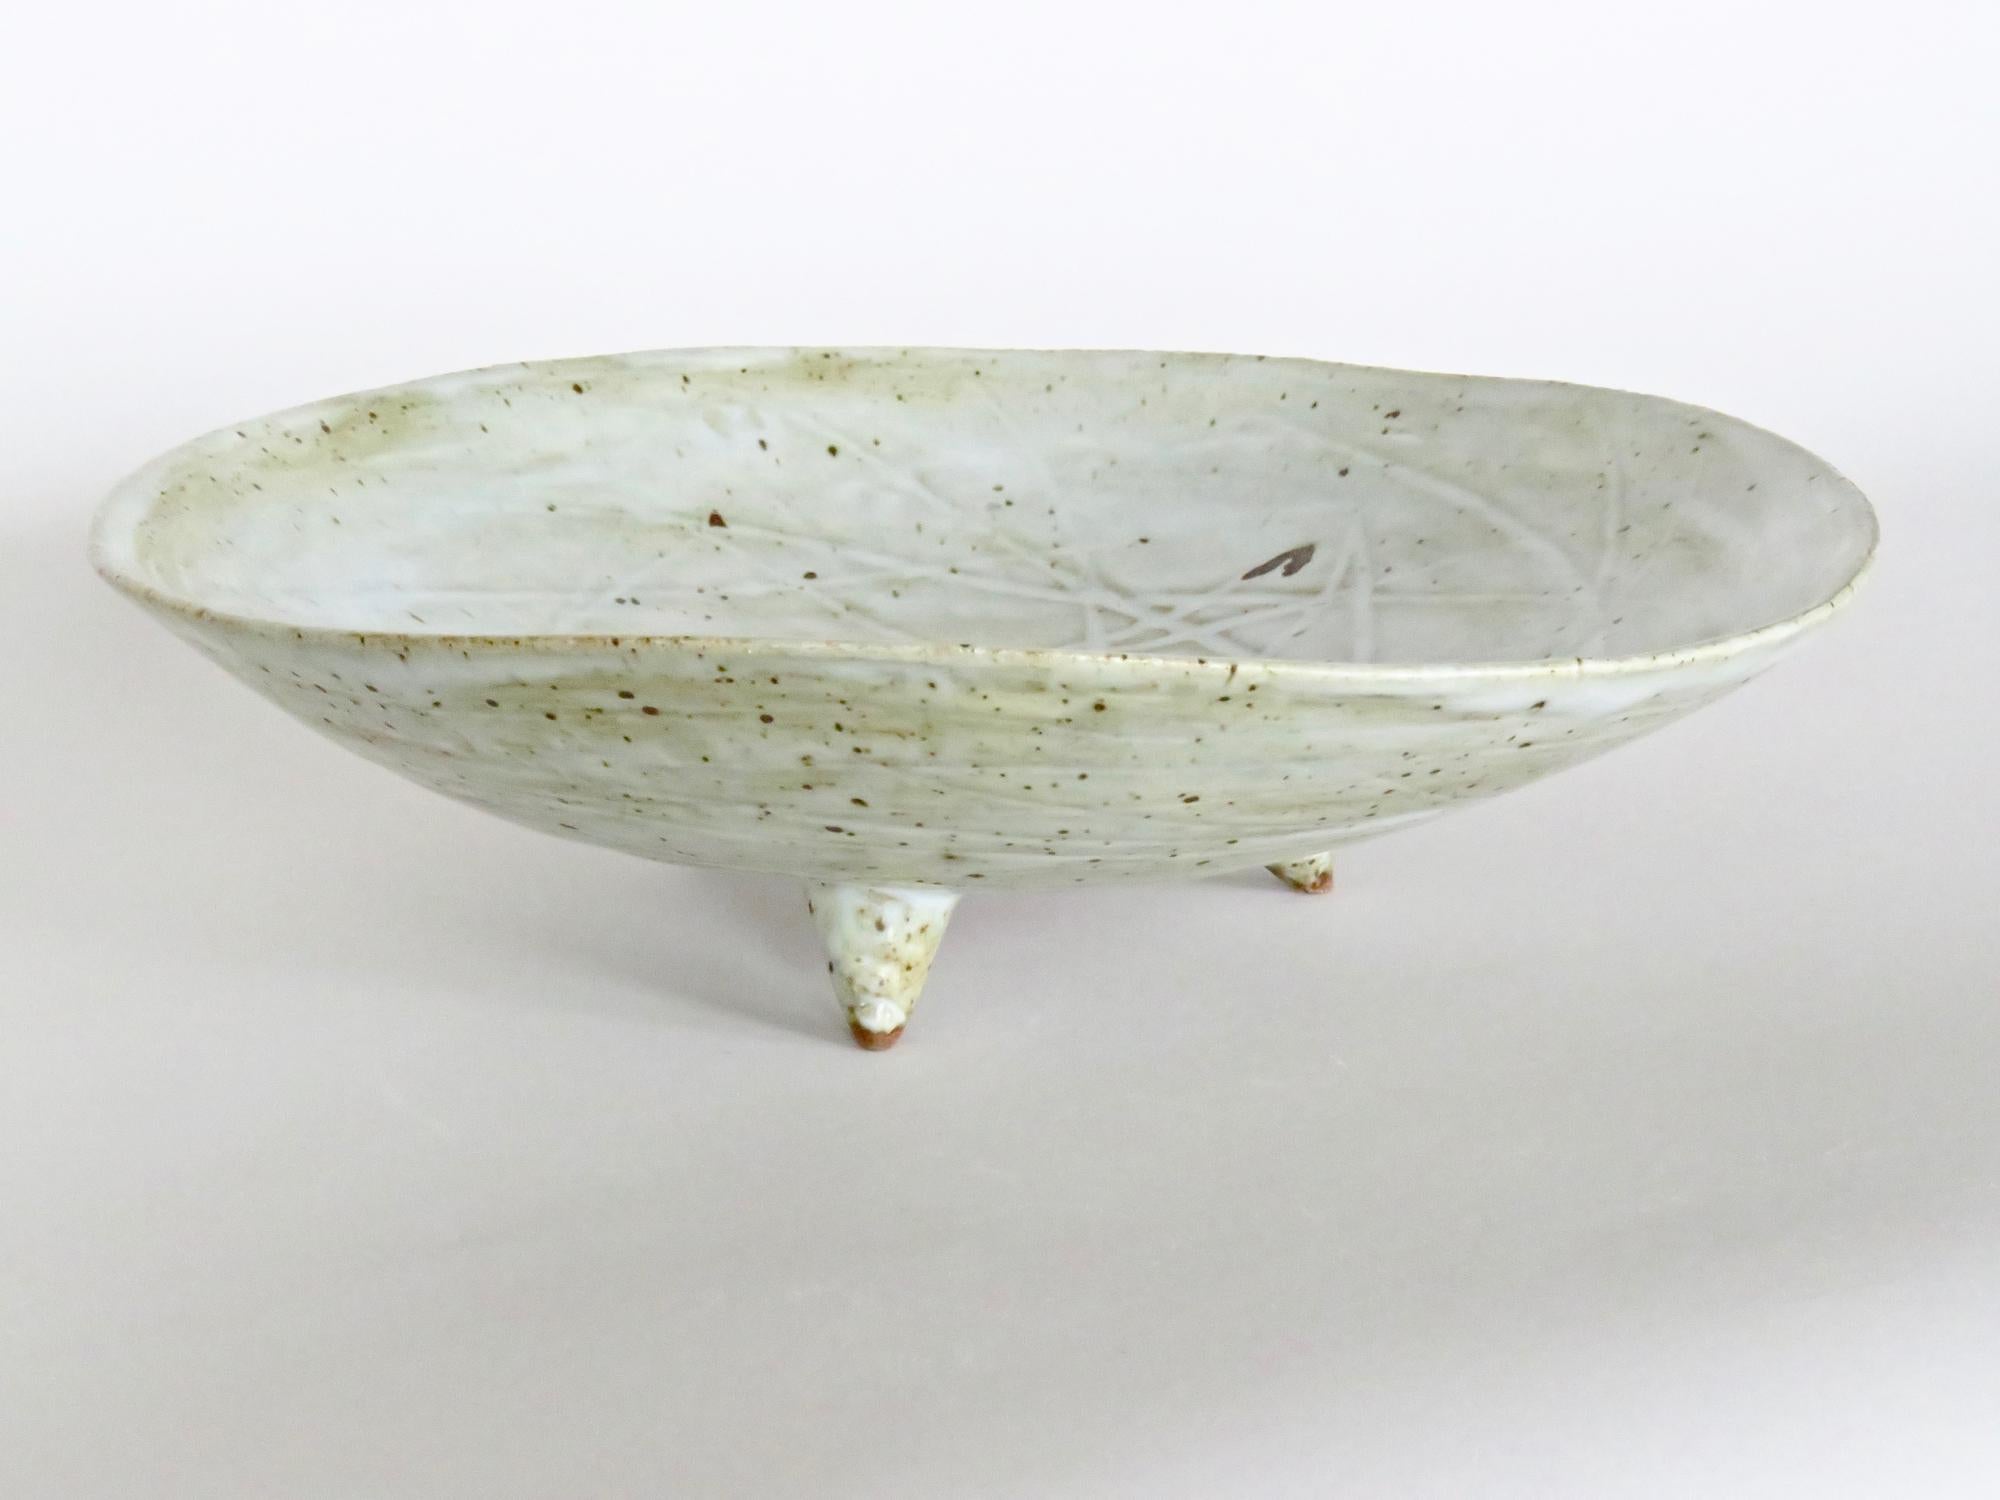 Large Footed Ceramic Serving Bowl, Off-White Speckled Glaze, Hand Built 2